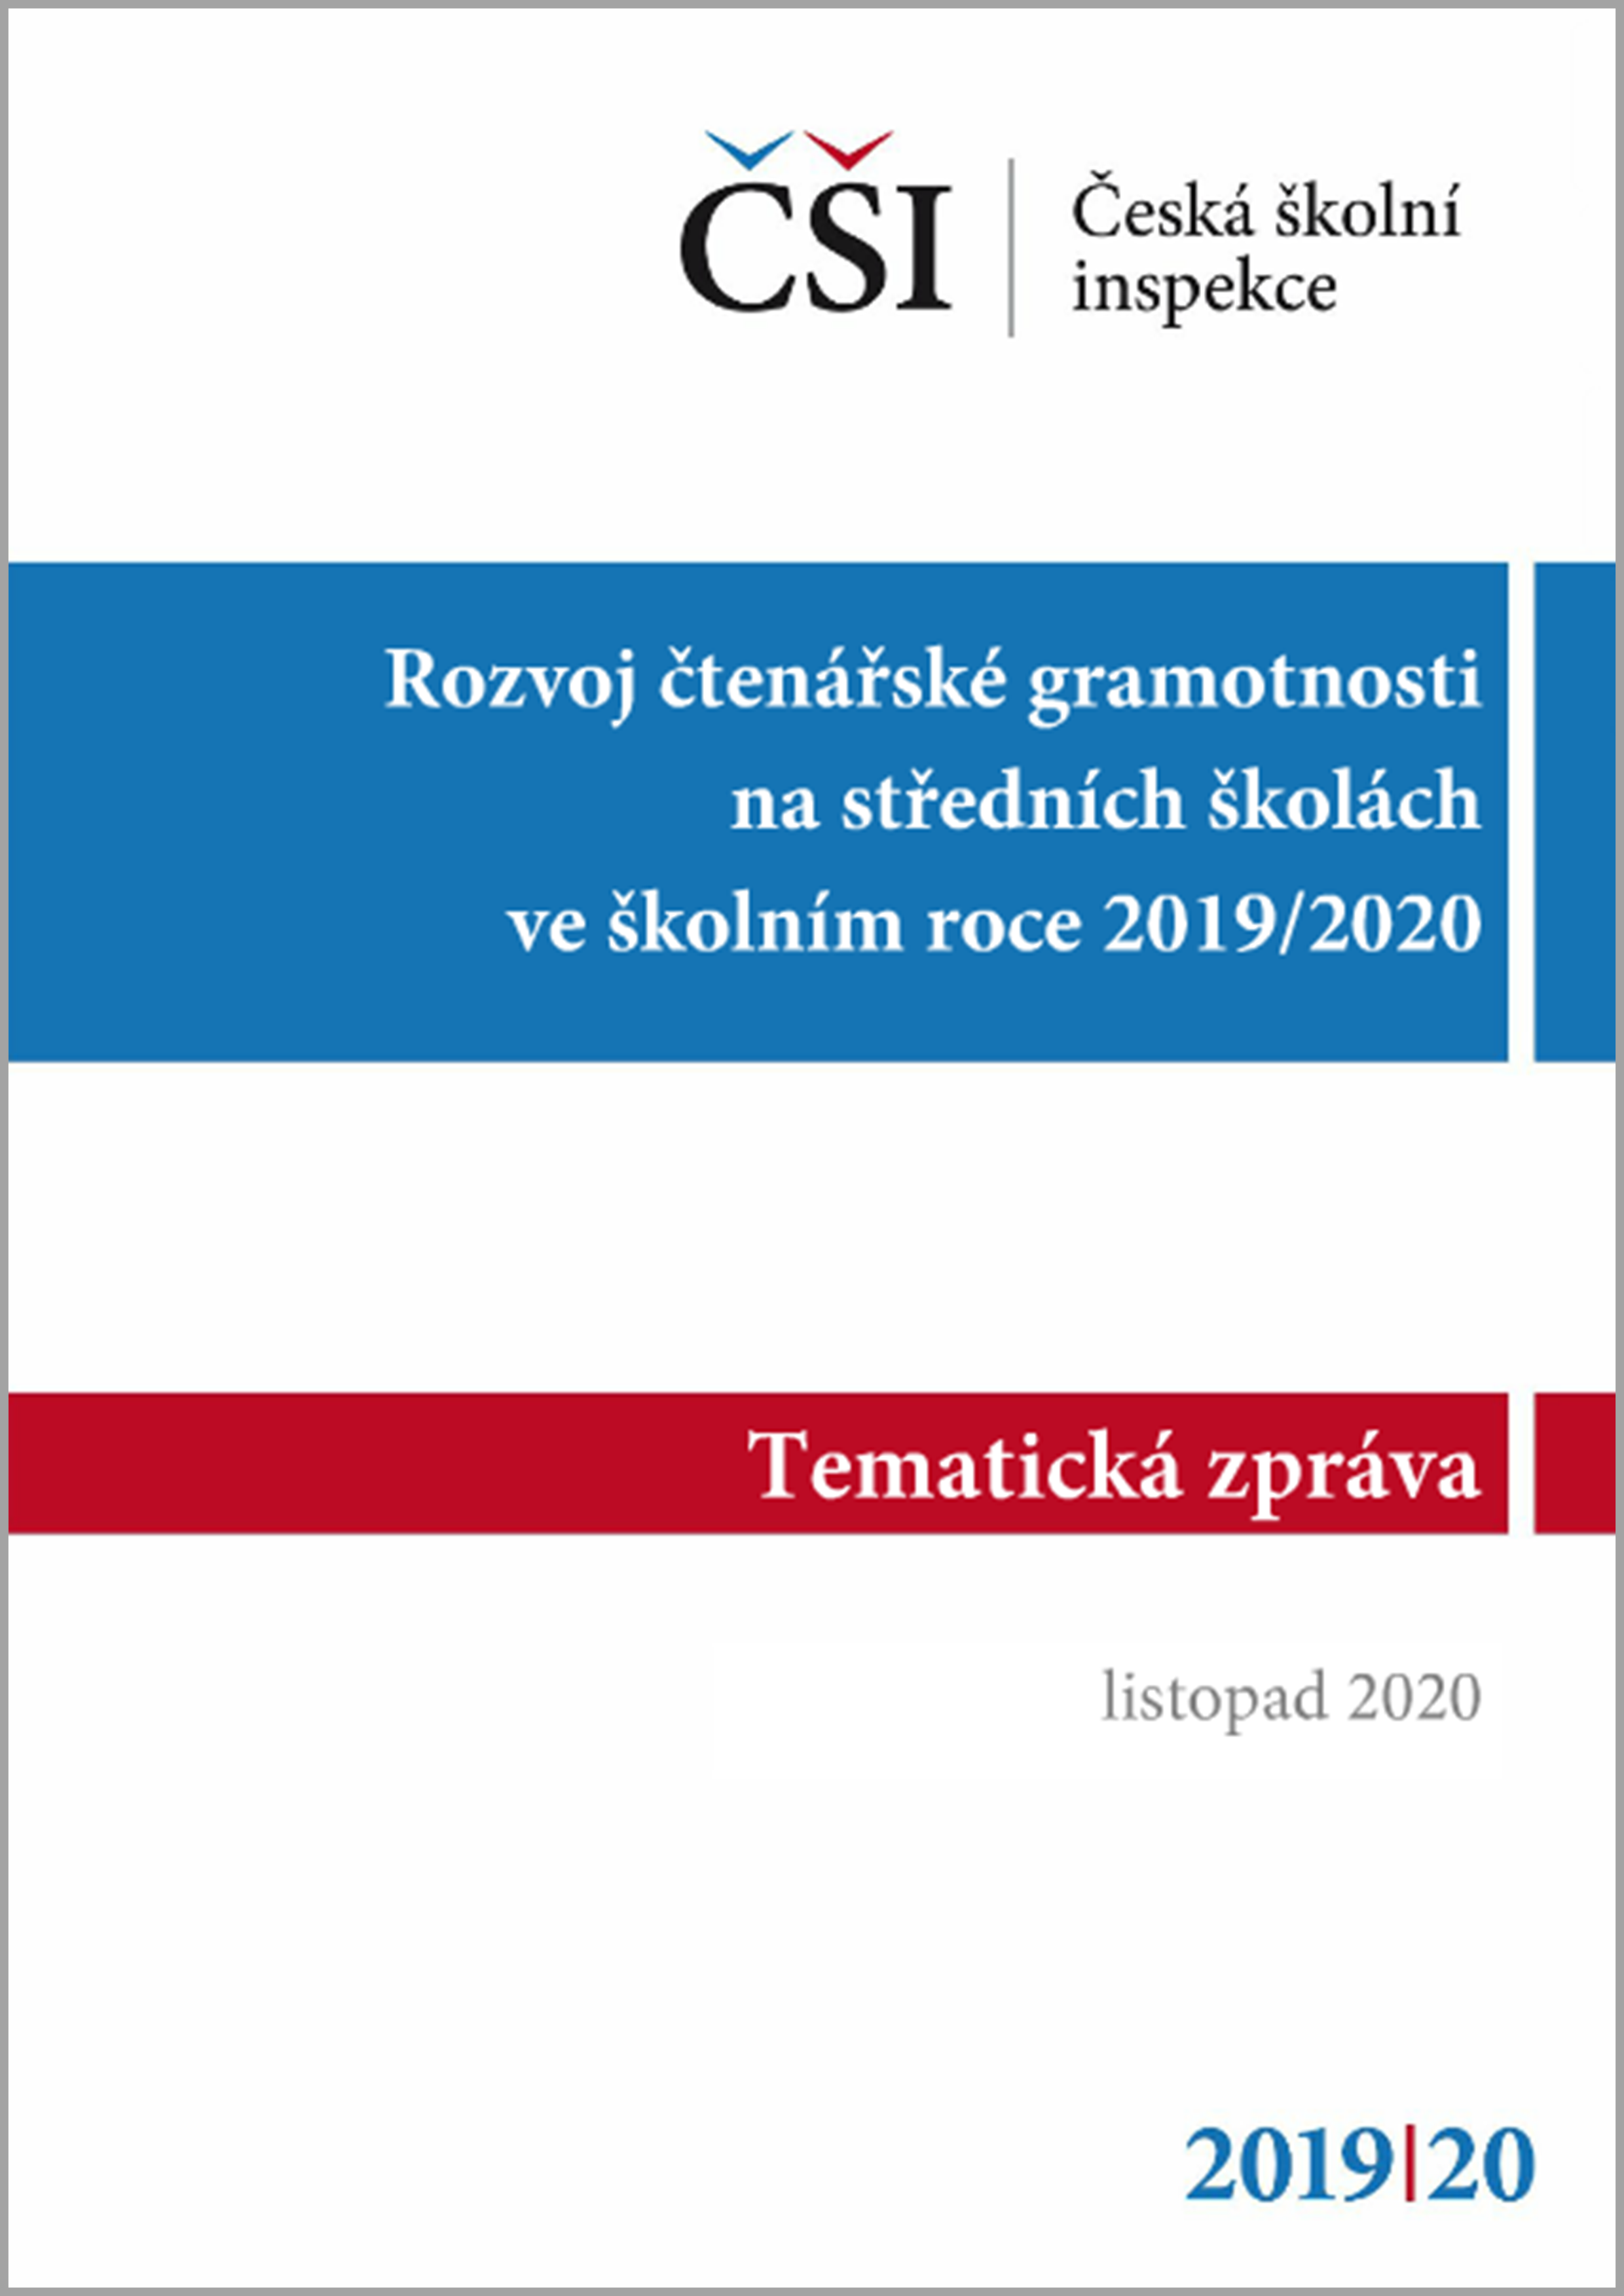 Tematická zpráva - Rozvoj čtenářské gramotnosti na středních školách ve školním roce 2019/2020